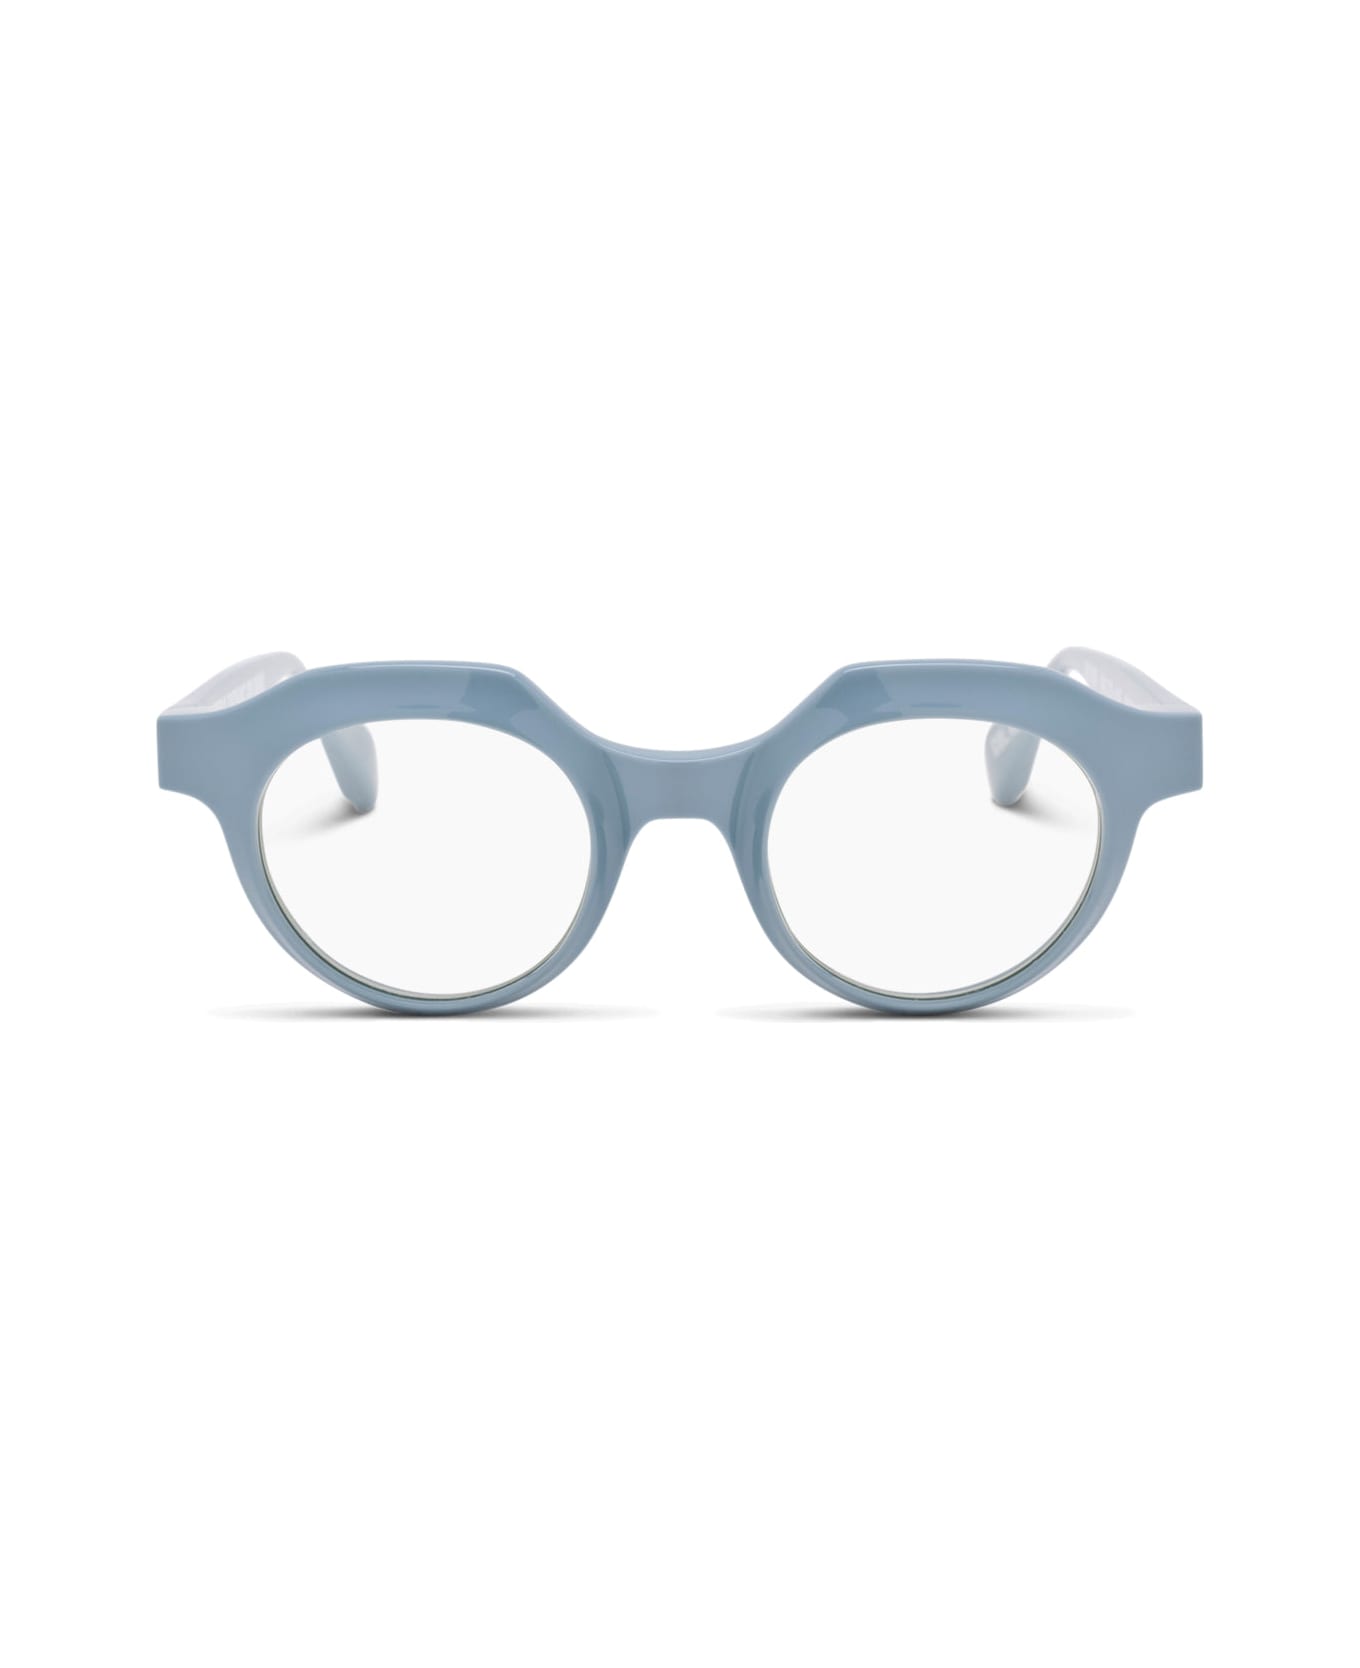 FACTORY900 Rf 020-433 Glasses - light blue アイウェア